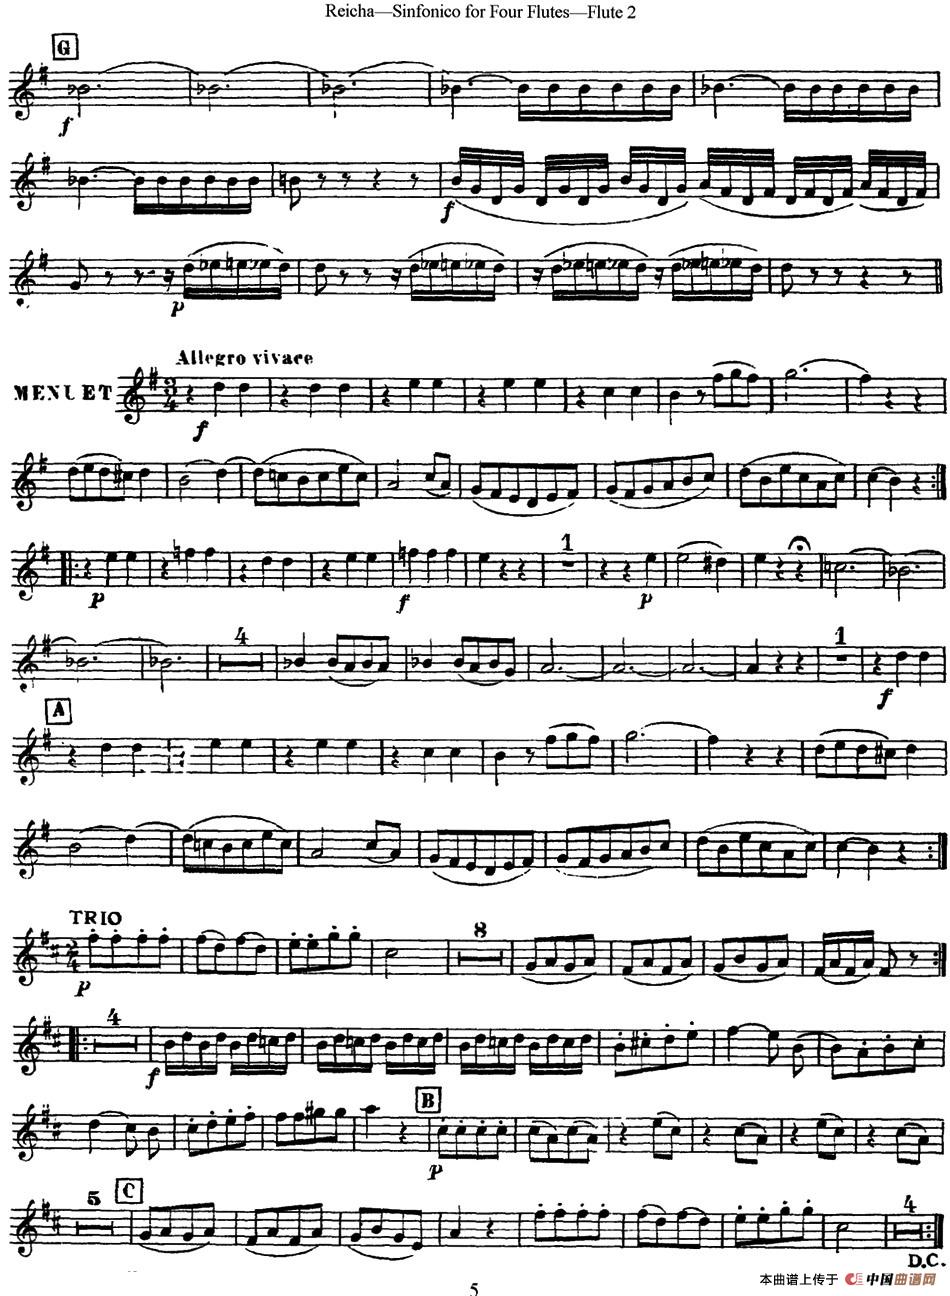 瑞查长笛四重奏（Flute 2）长笛谱